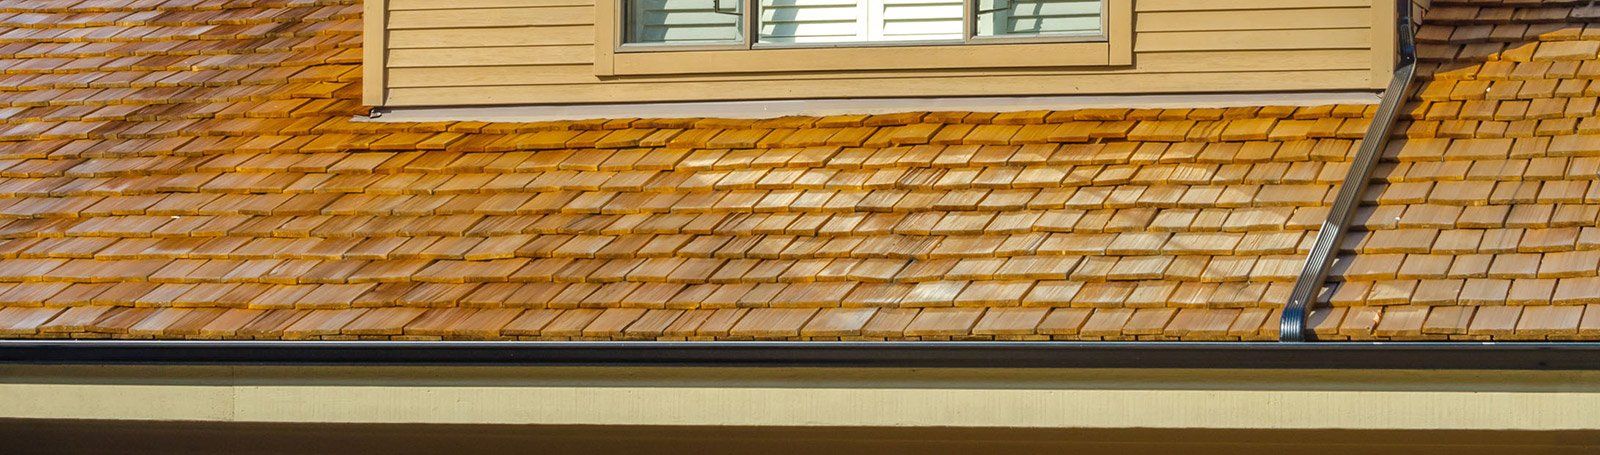 House wood shingle roof